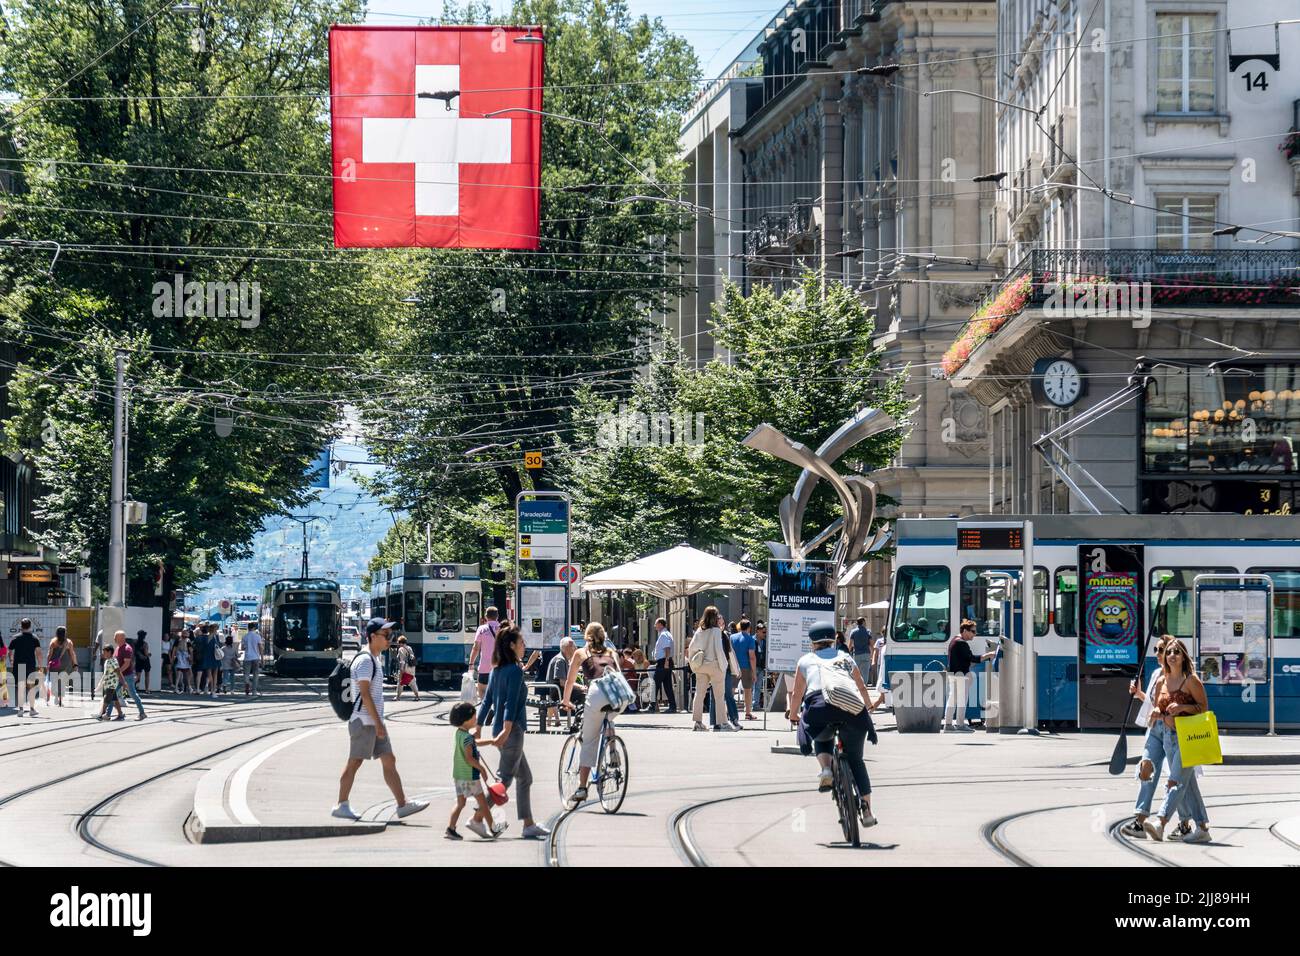 Paradeplatz Zürich, Bahnhofstrasse, Schweizer Flagge, Straßenbahnen, Schweiz Banque D'Images